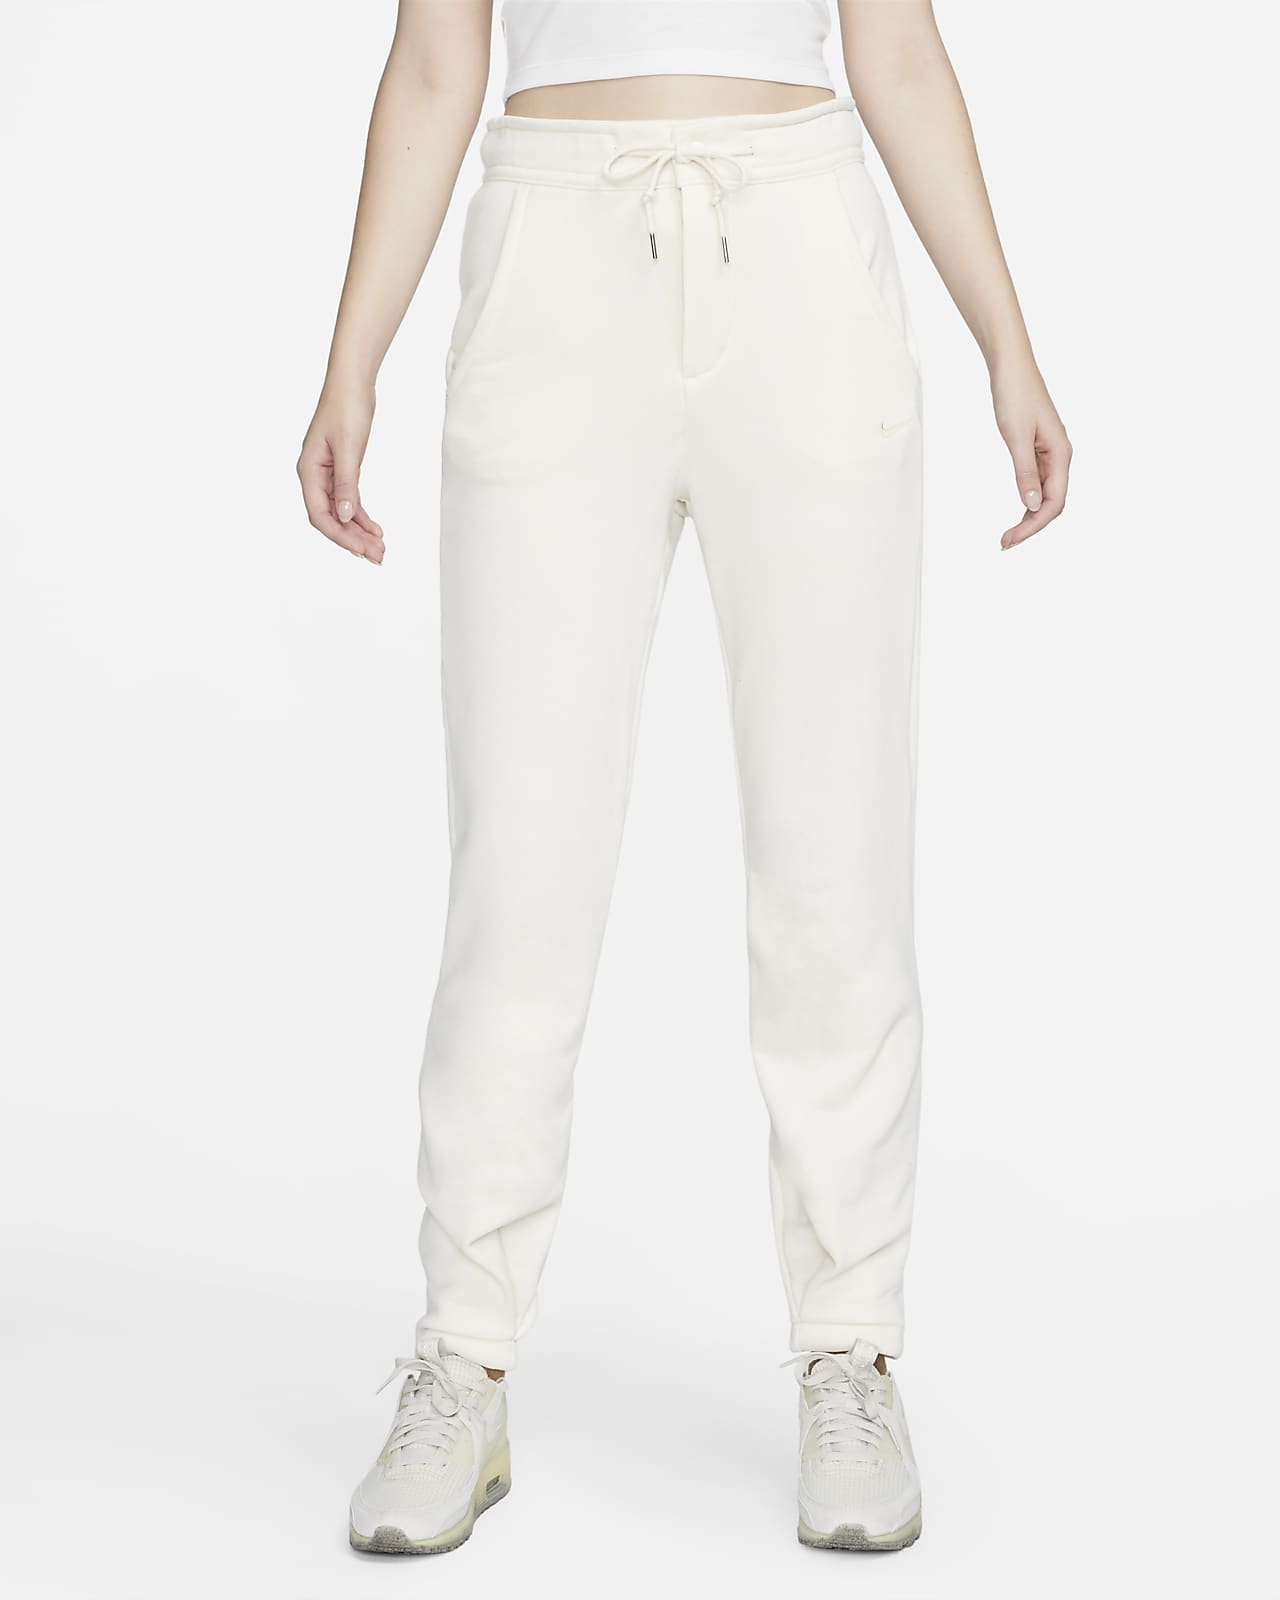 Nike Sportswear Modern Fleece Pantalons de teixit French Terry de cintura alta - Dona